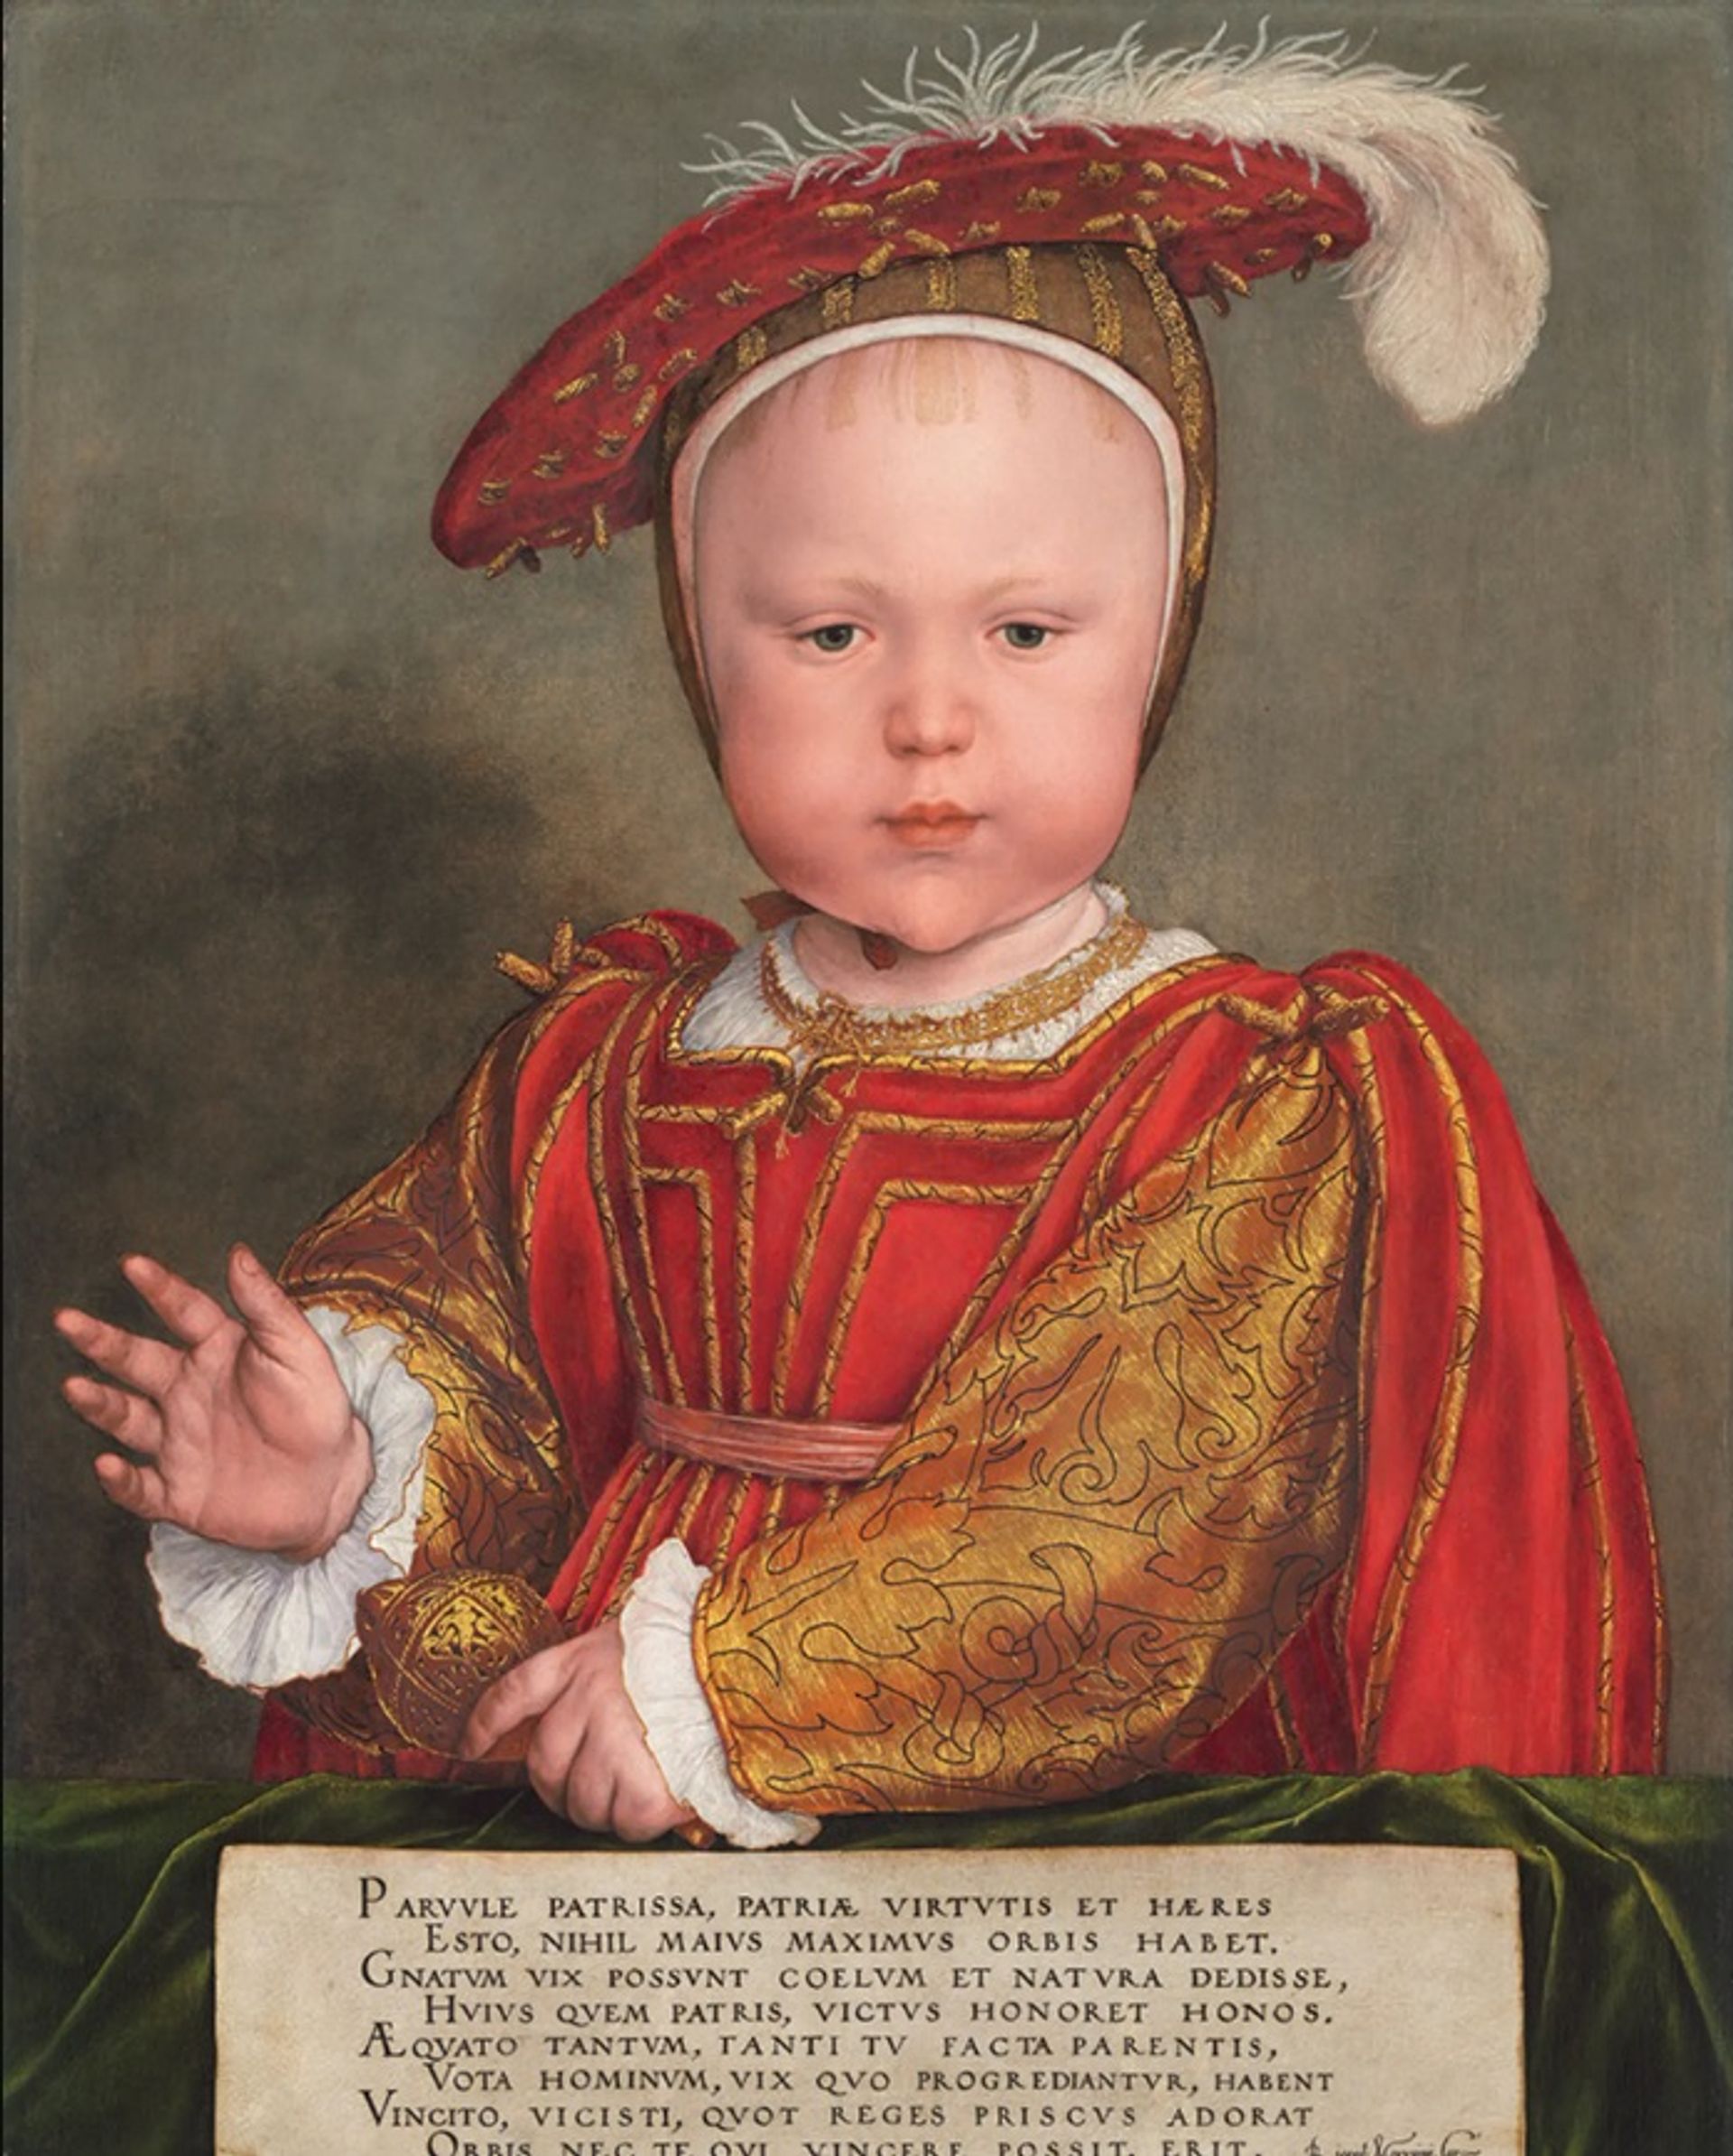 אדוארד השישי כילד (בסביבות 1538) של הנס הולביין הצעיר, מ"הגלריה הלאומית לאמנות" בוושינגטון הבירה

באדיבות "הגלריה הלאומית לאמנות", וושינגטון הבירה